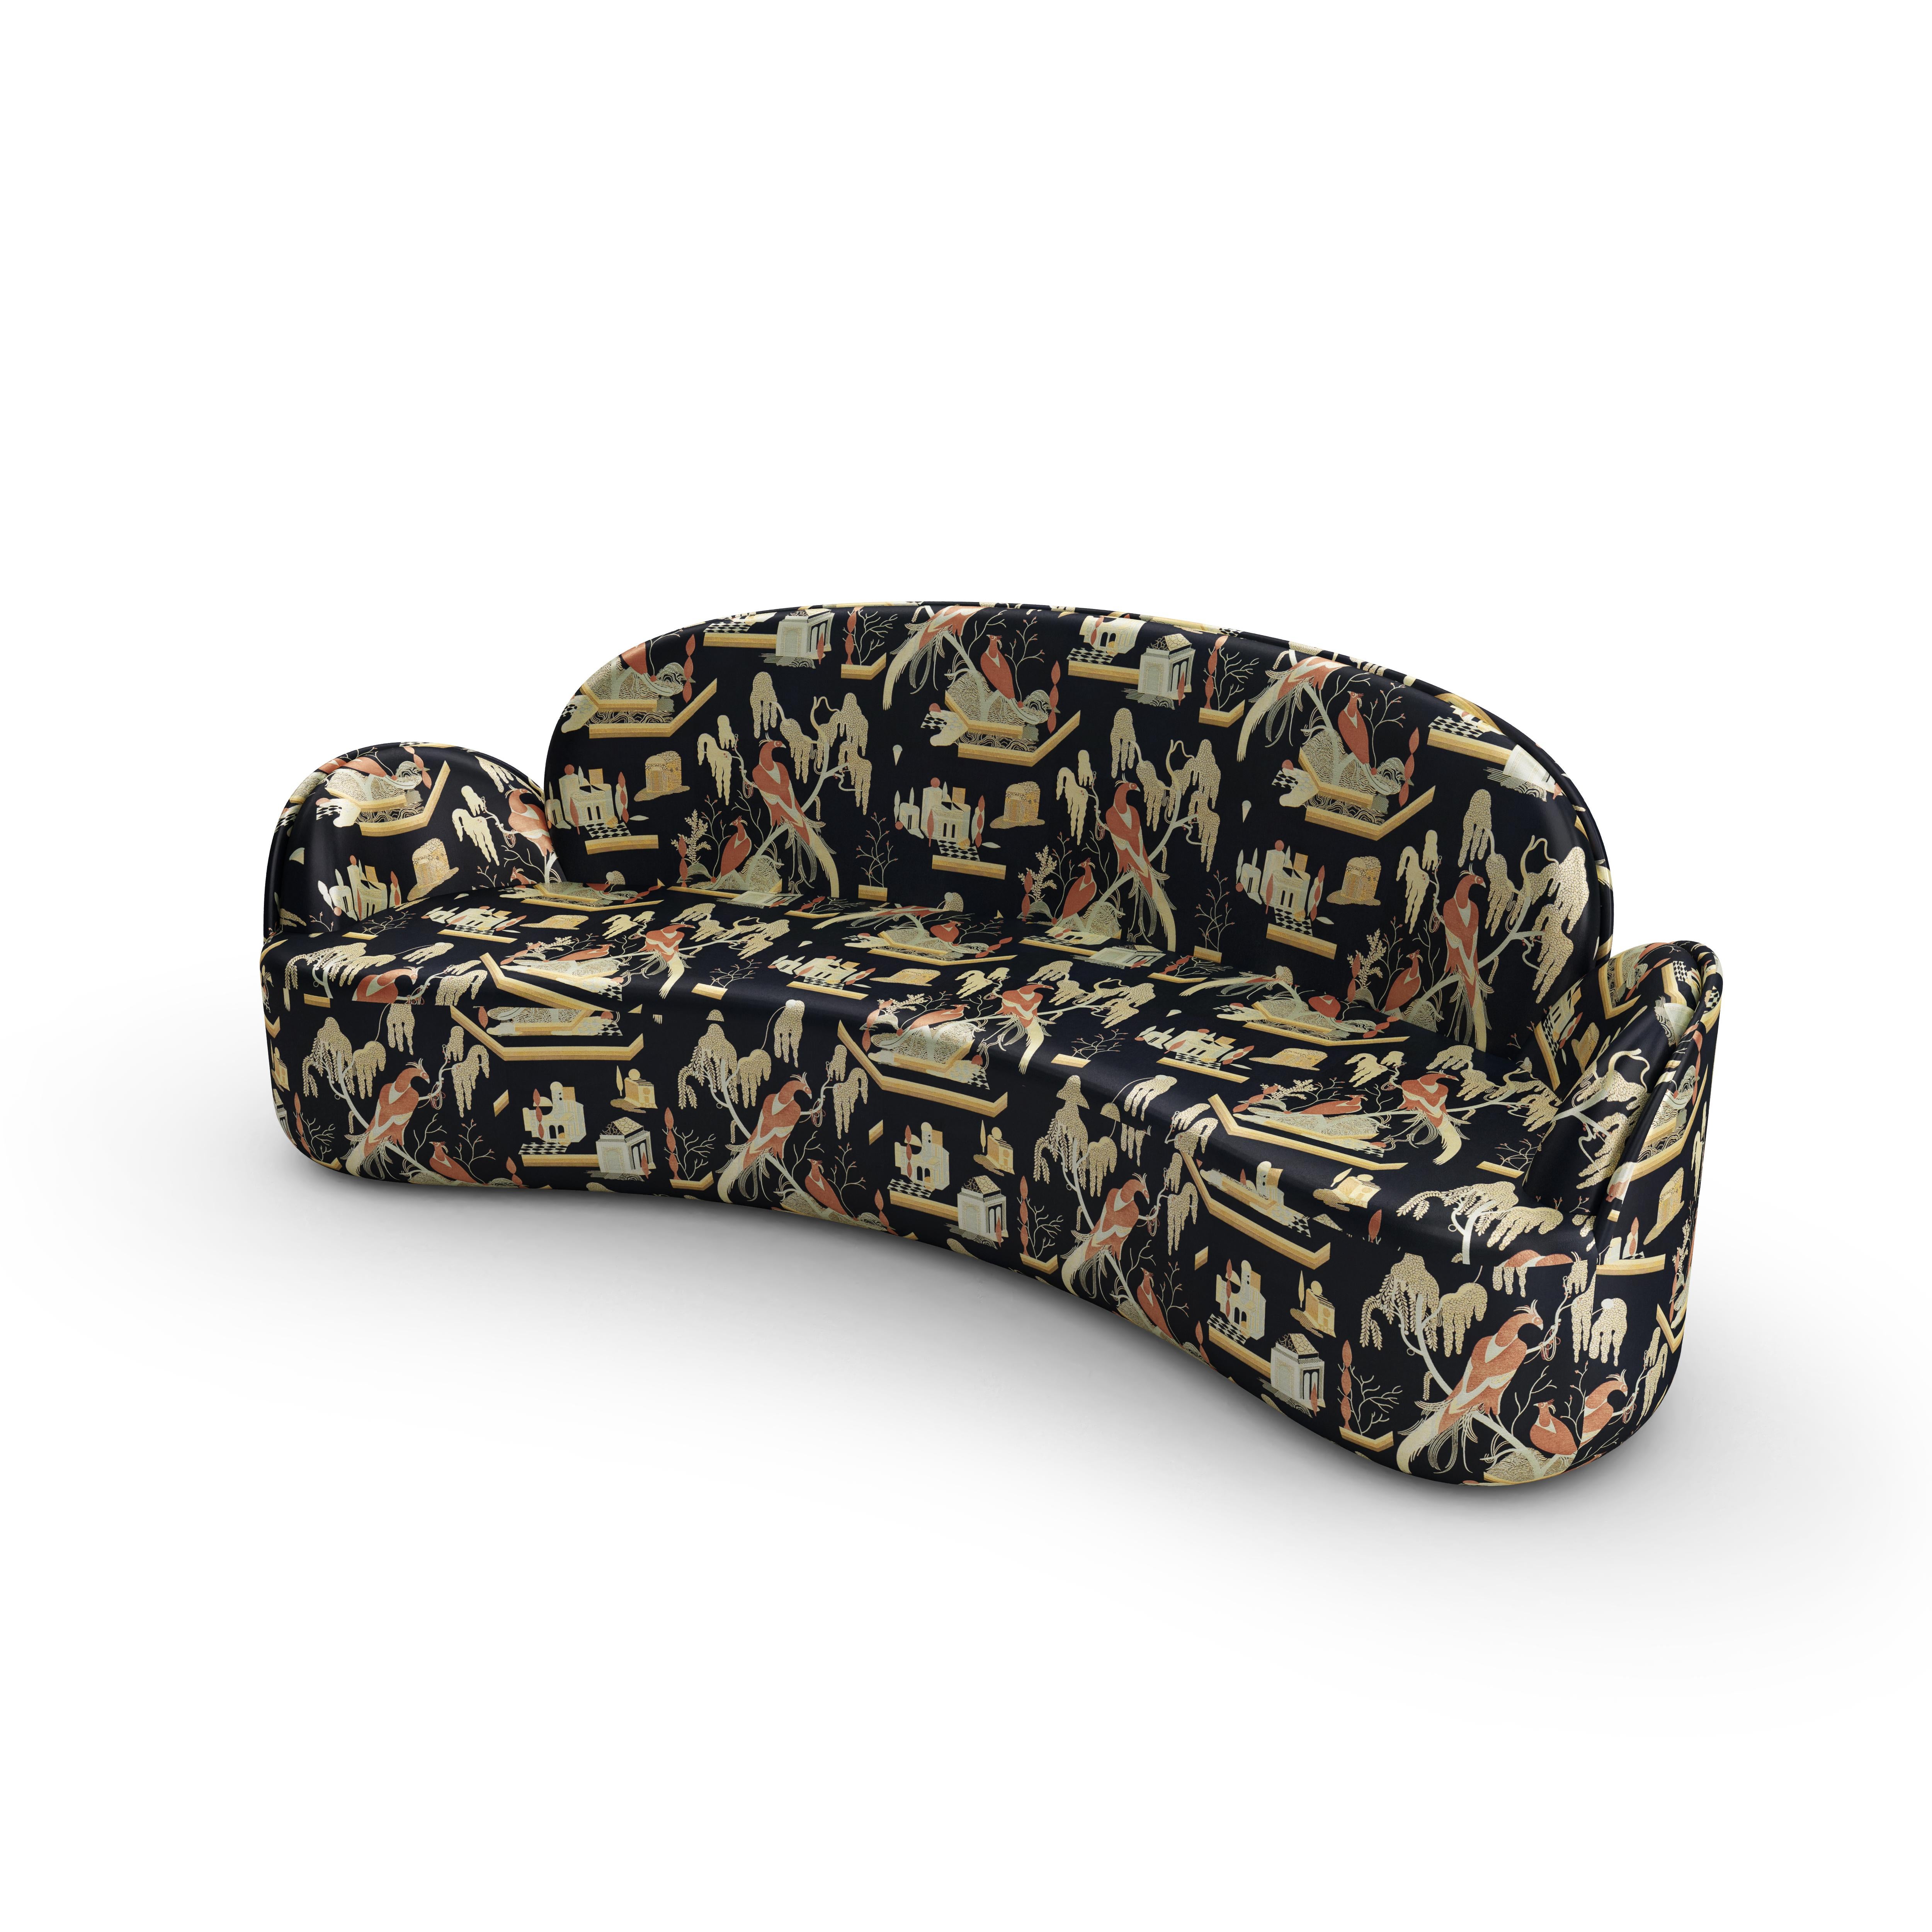 Das 3-Sitzer-Sofa Strings mit Plüschstoff Dedar in Schwarz-Beige von Nika Zupanc ist ein elegantes und ergonomisch perfektes Dreisitzer-Sofa mit herrlichen Rundungen. Es ist mit dem plüschigen schwarz-beigen Jacquard-Stoff This Must Be The Place von